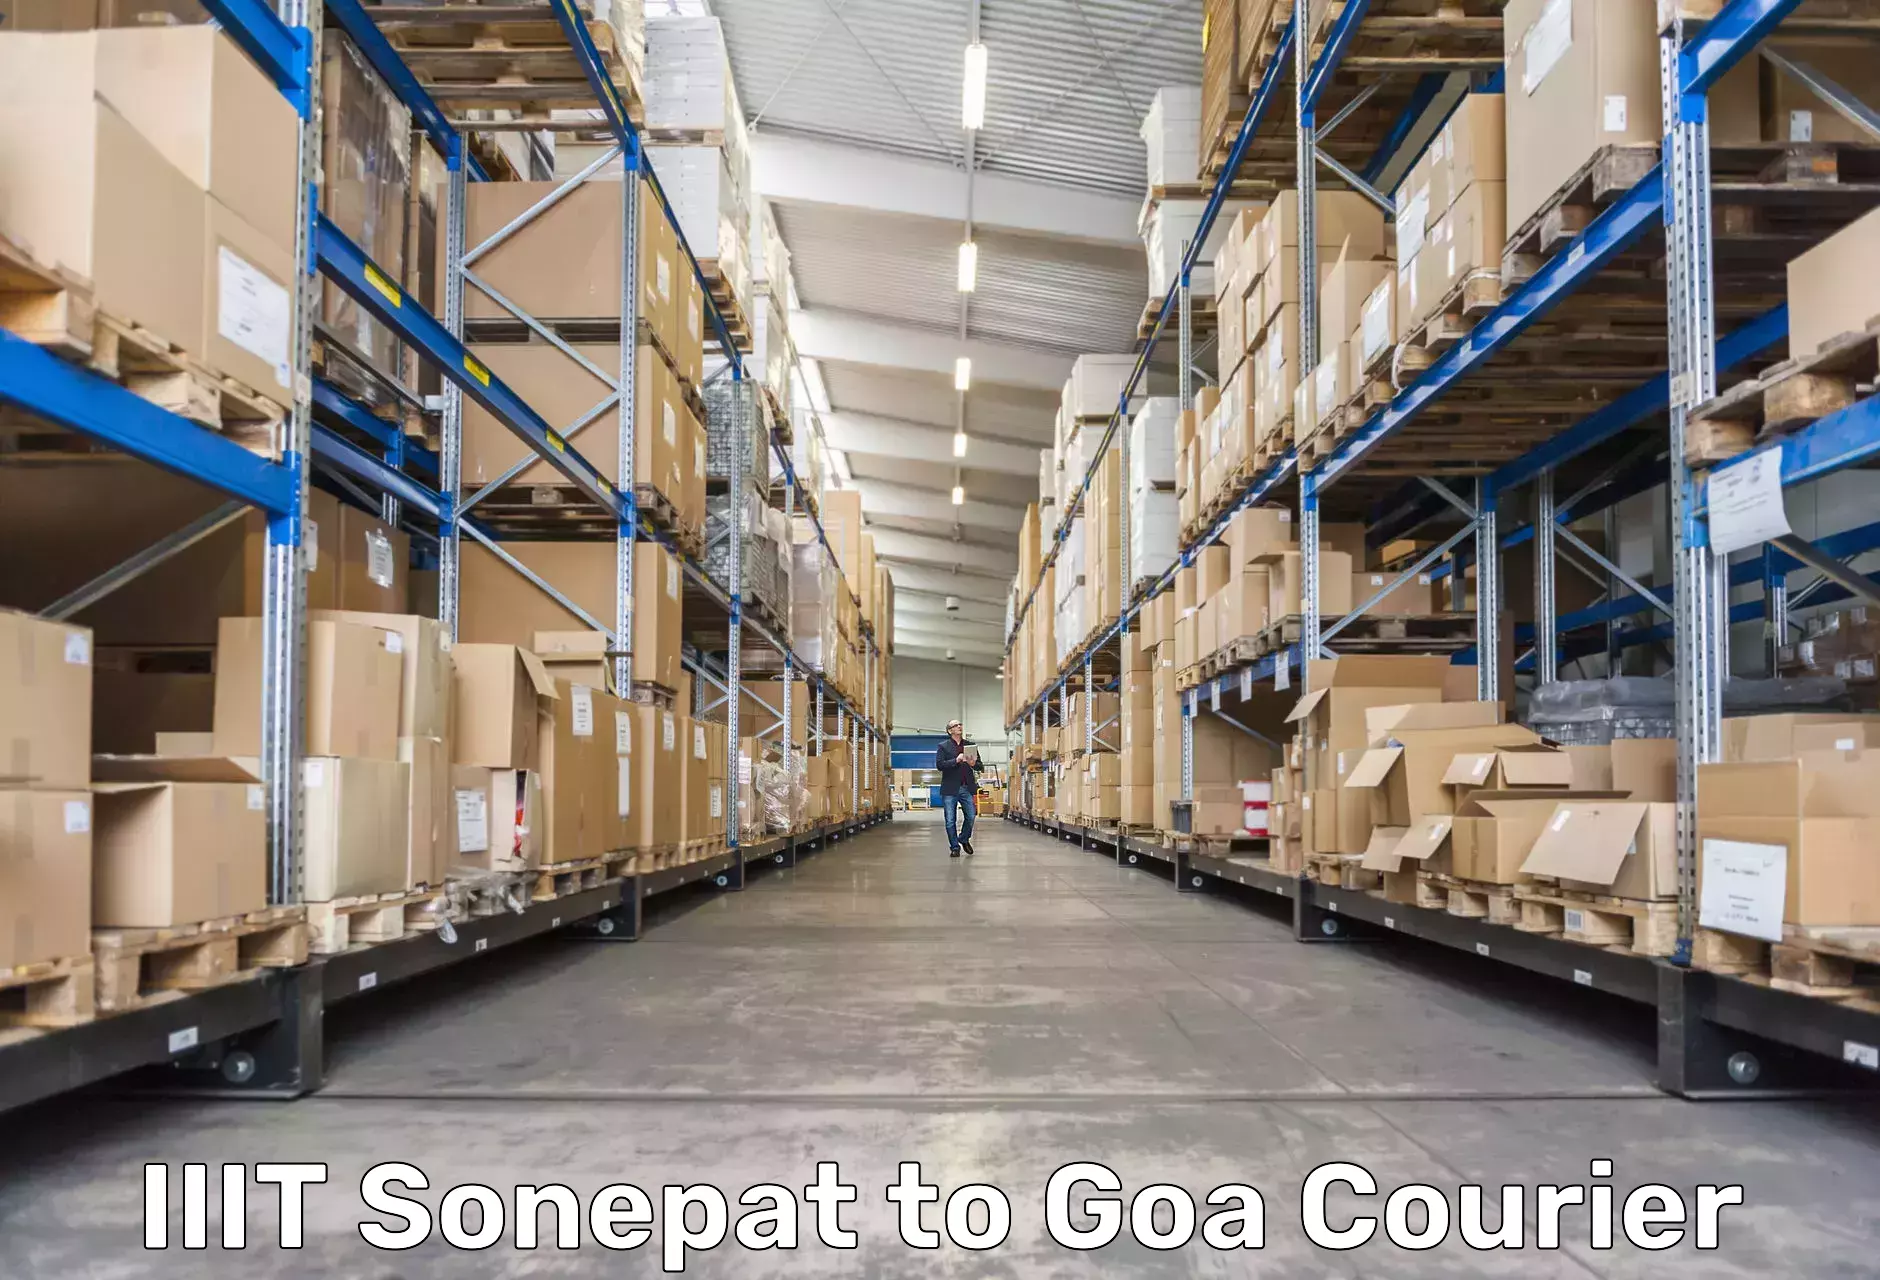 High value parcel delivery IIIT Sonepat to IIT Goa